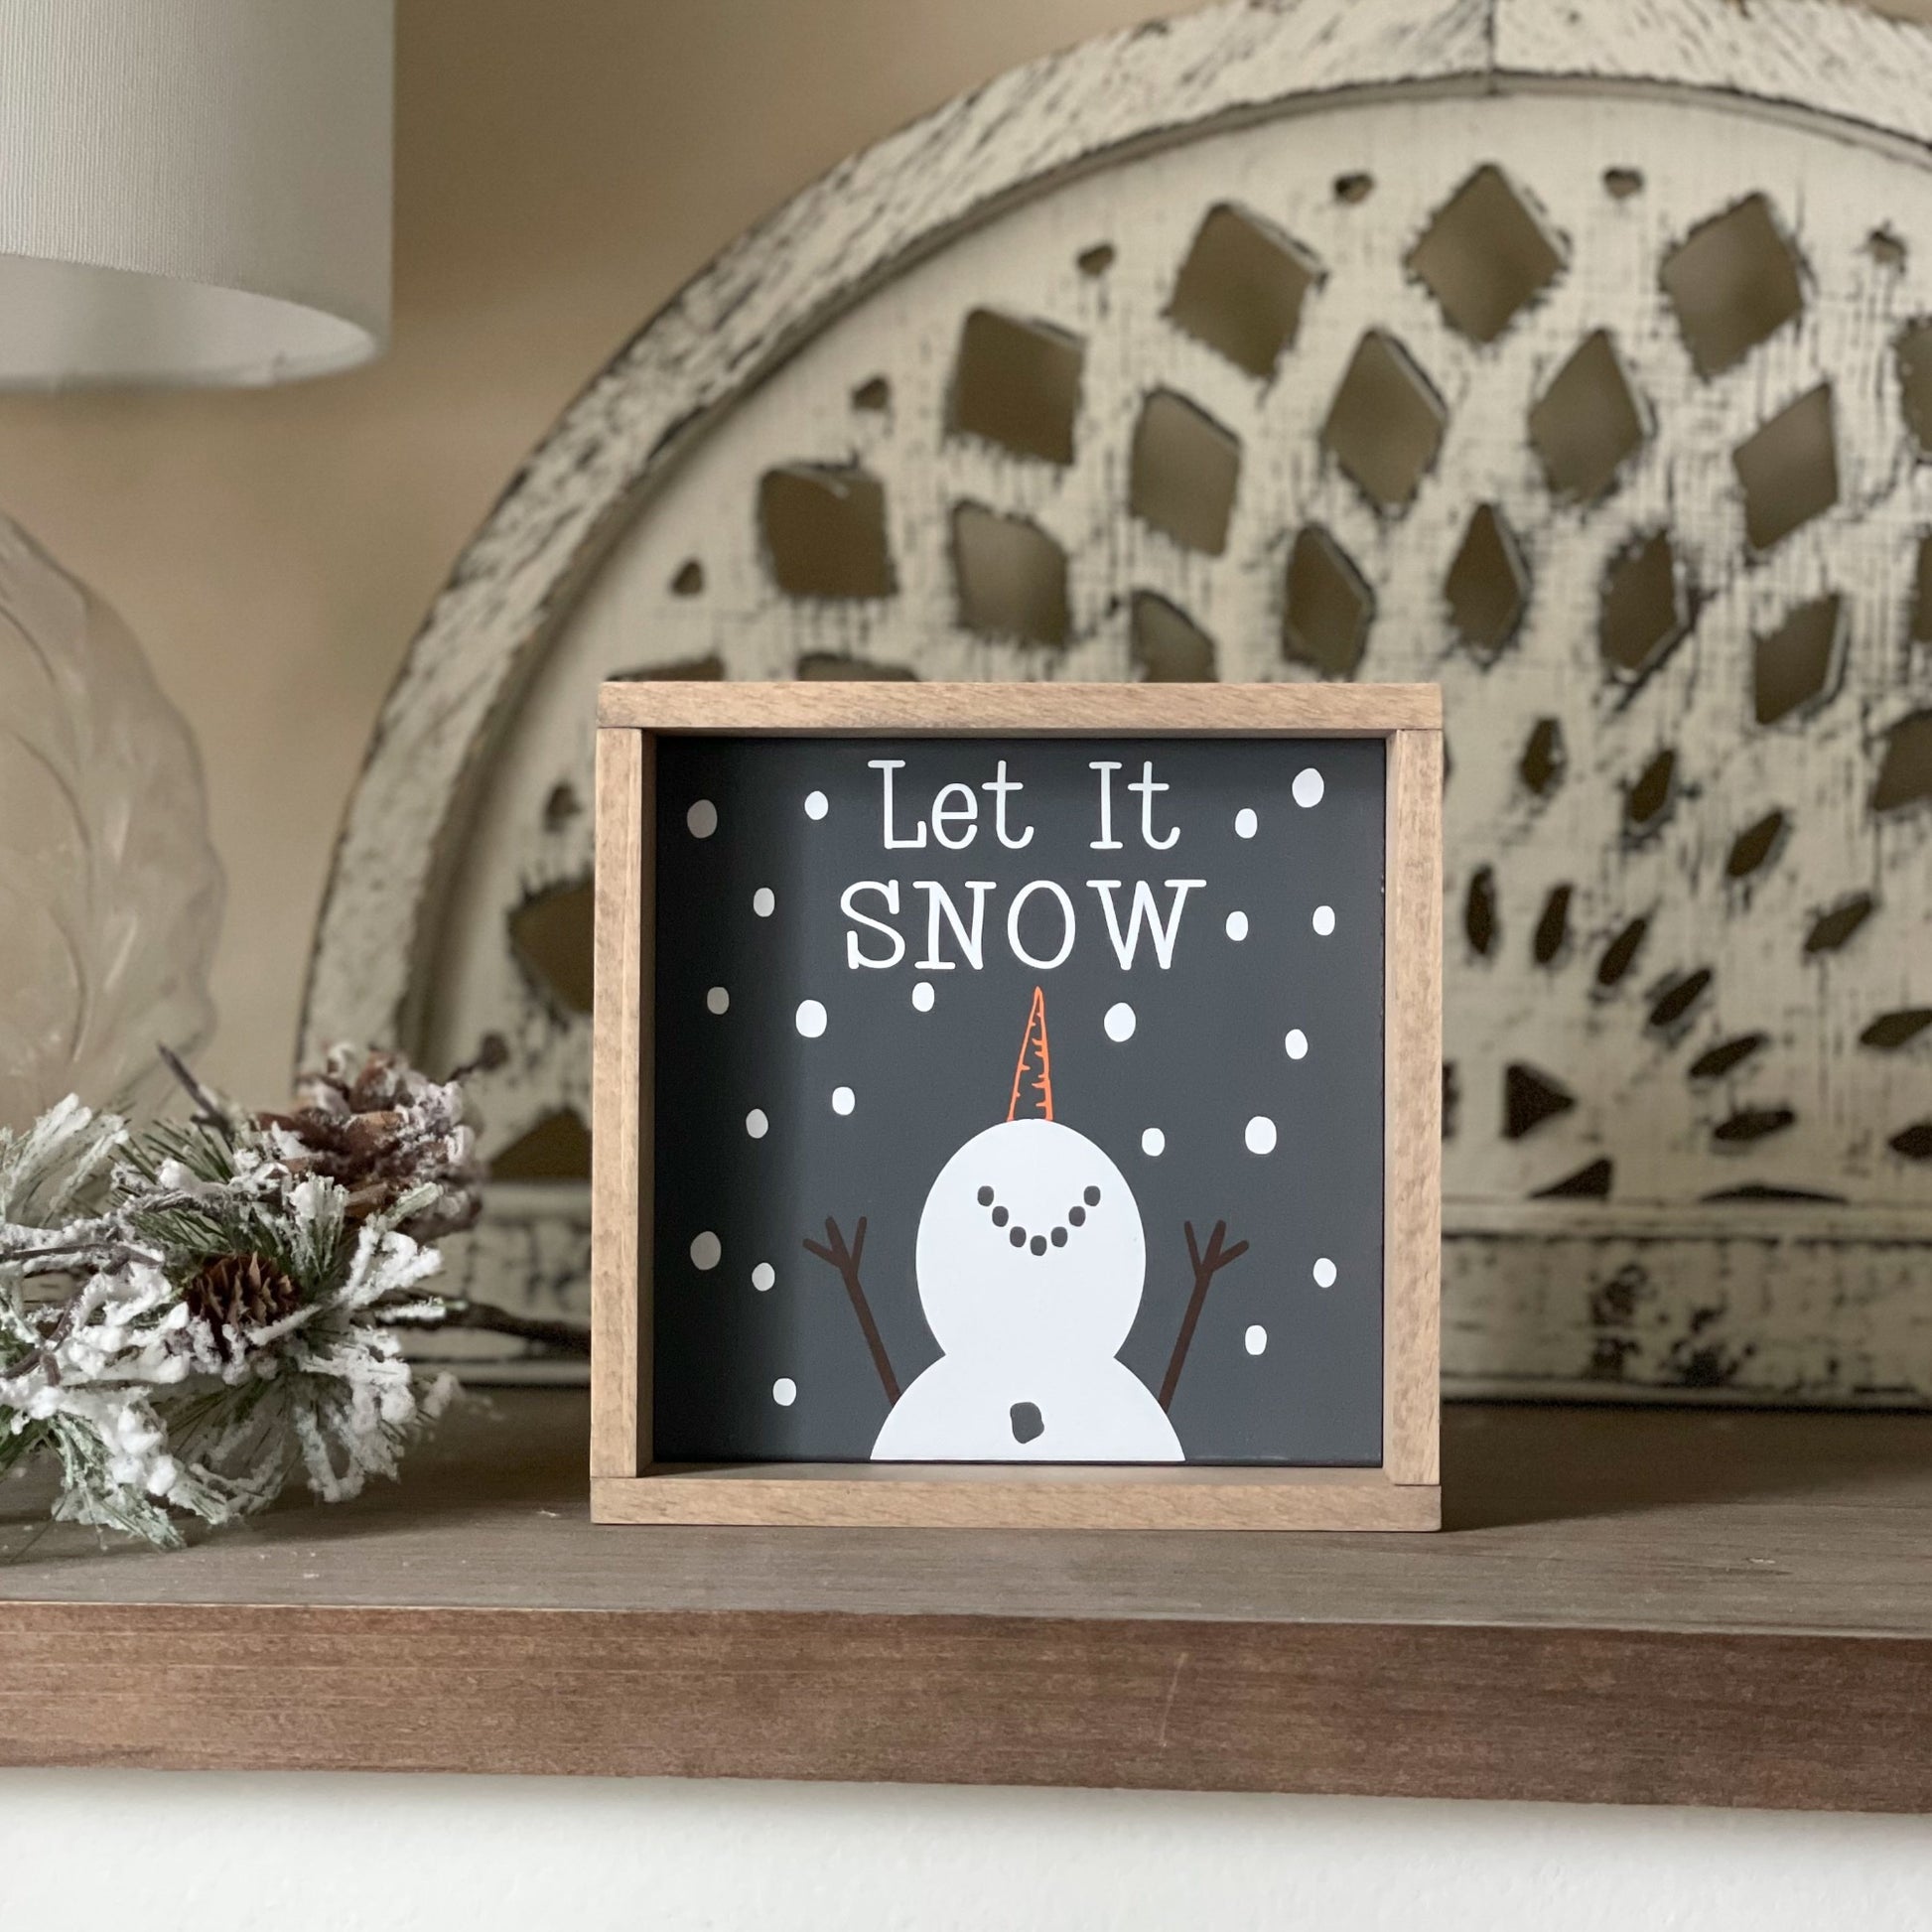 Winter snowman sign.